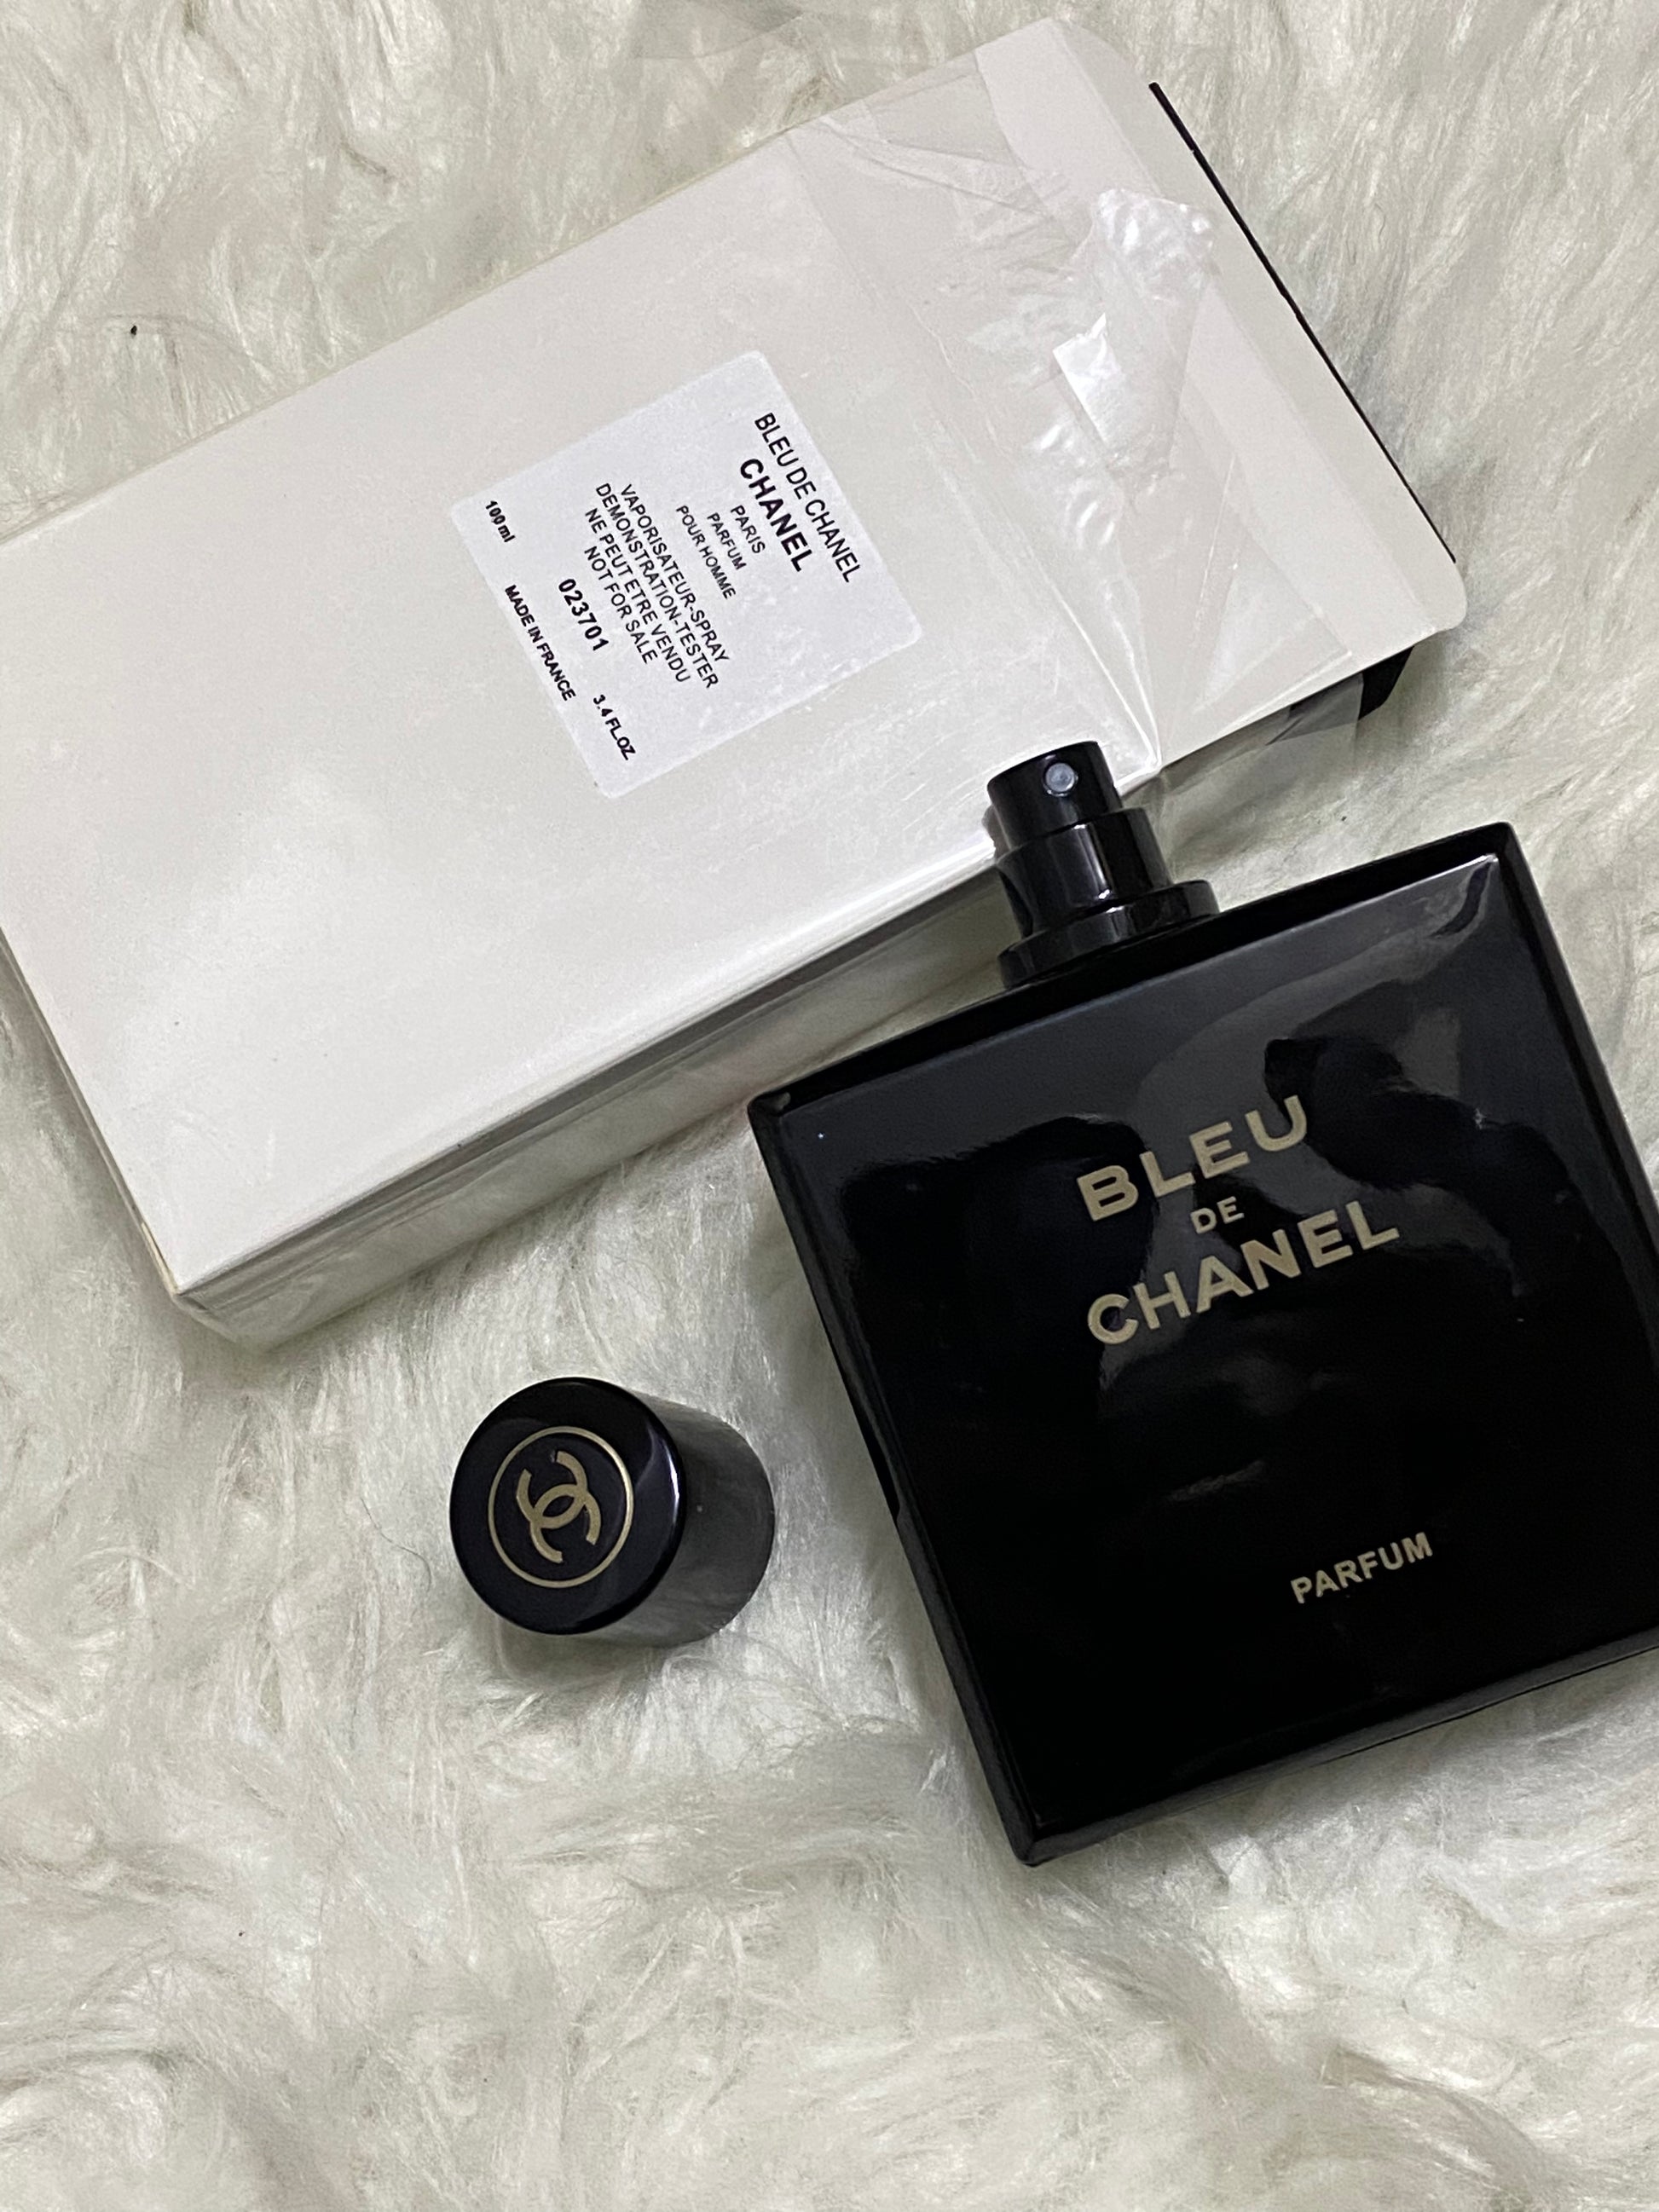 Bleu De Chanel Parfum Tester 100 ML